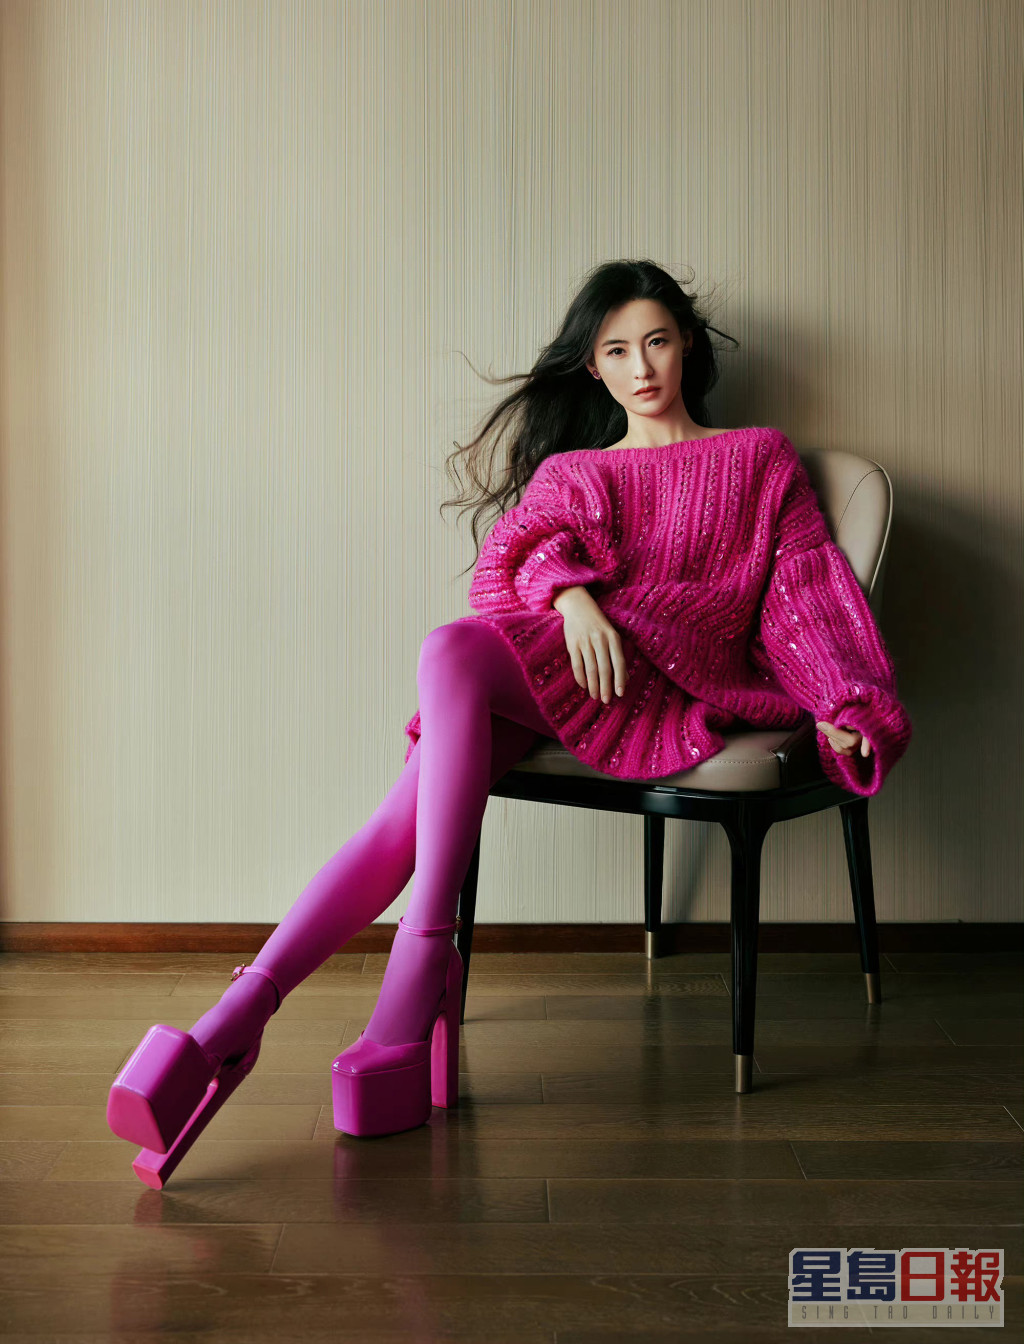 其實張栢芝所着的是Valentino Pink PP Collection今季最新款。